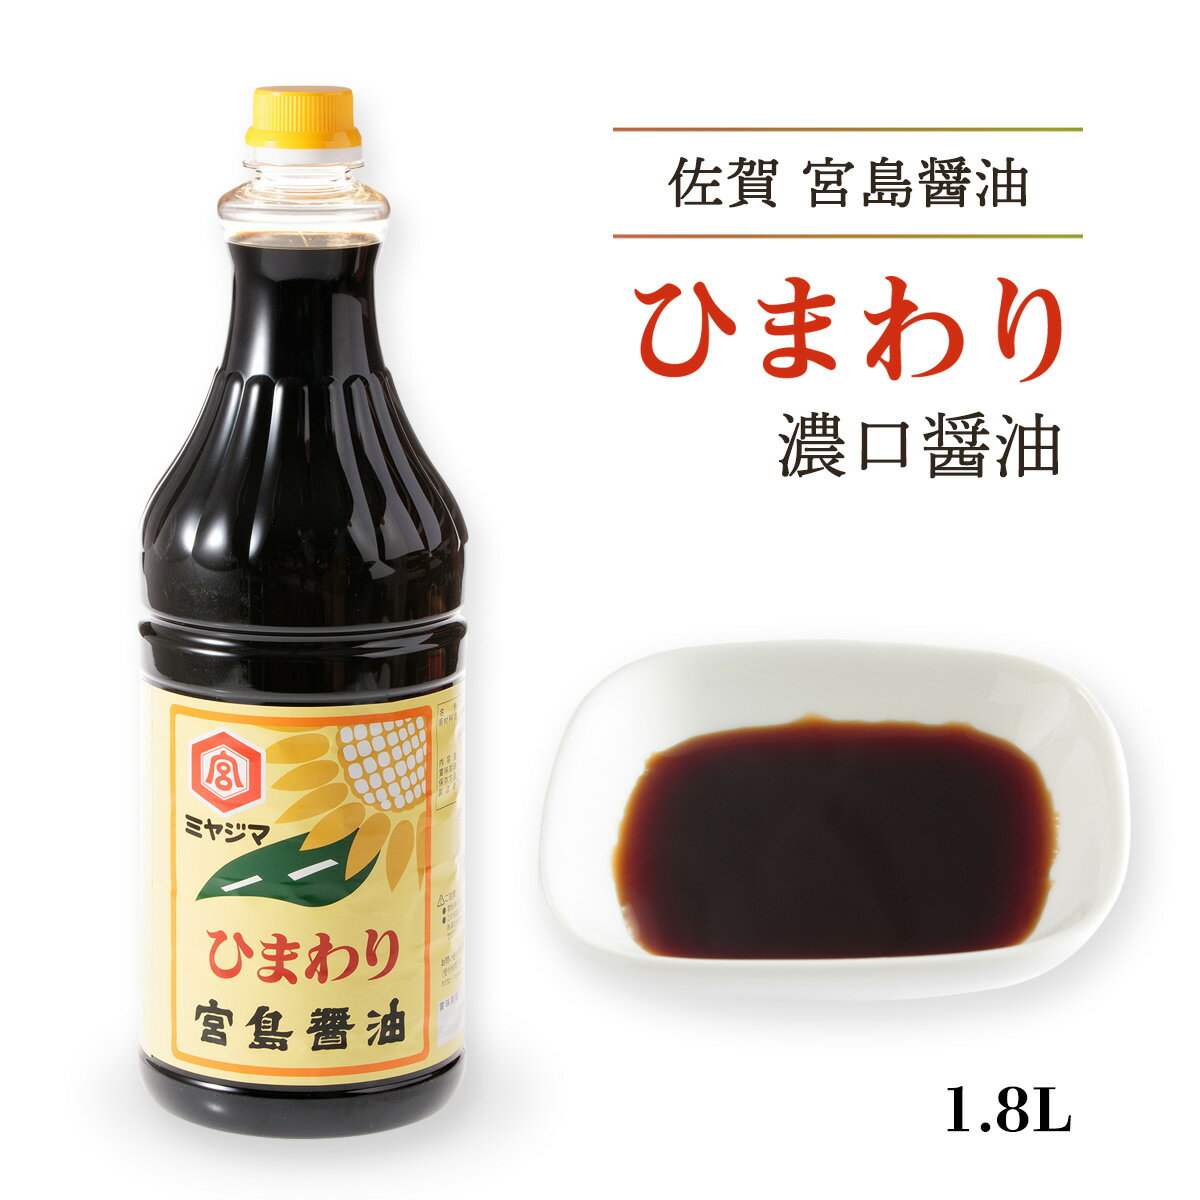 [宮島醤油] ひまわり濃口醤油 1.8L /佐賀県/しょうゆ/しょう油/大容量/業務用